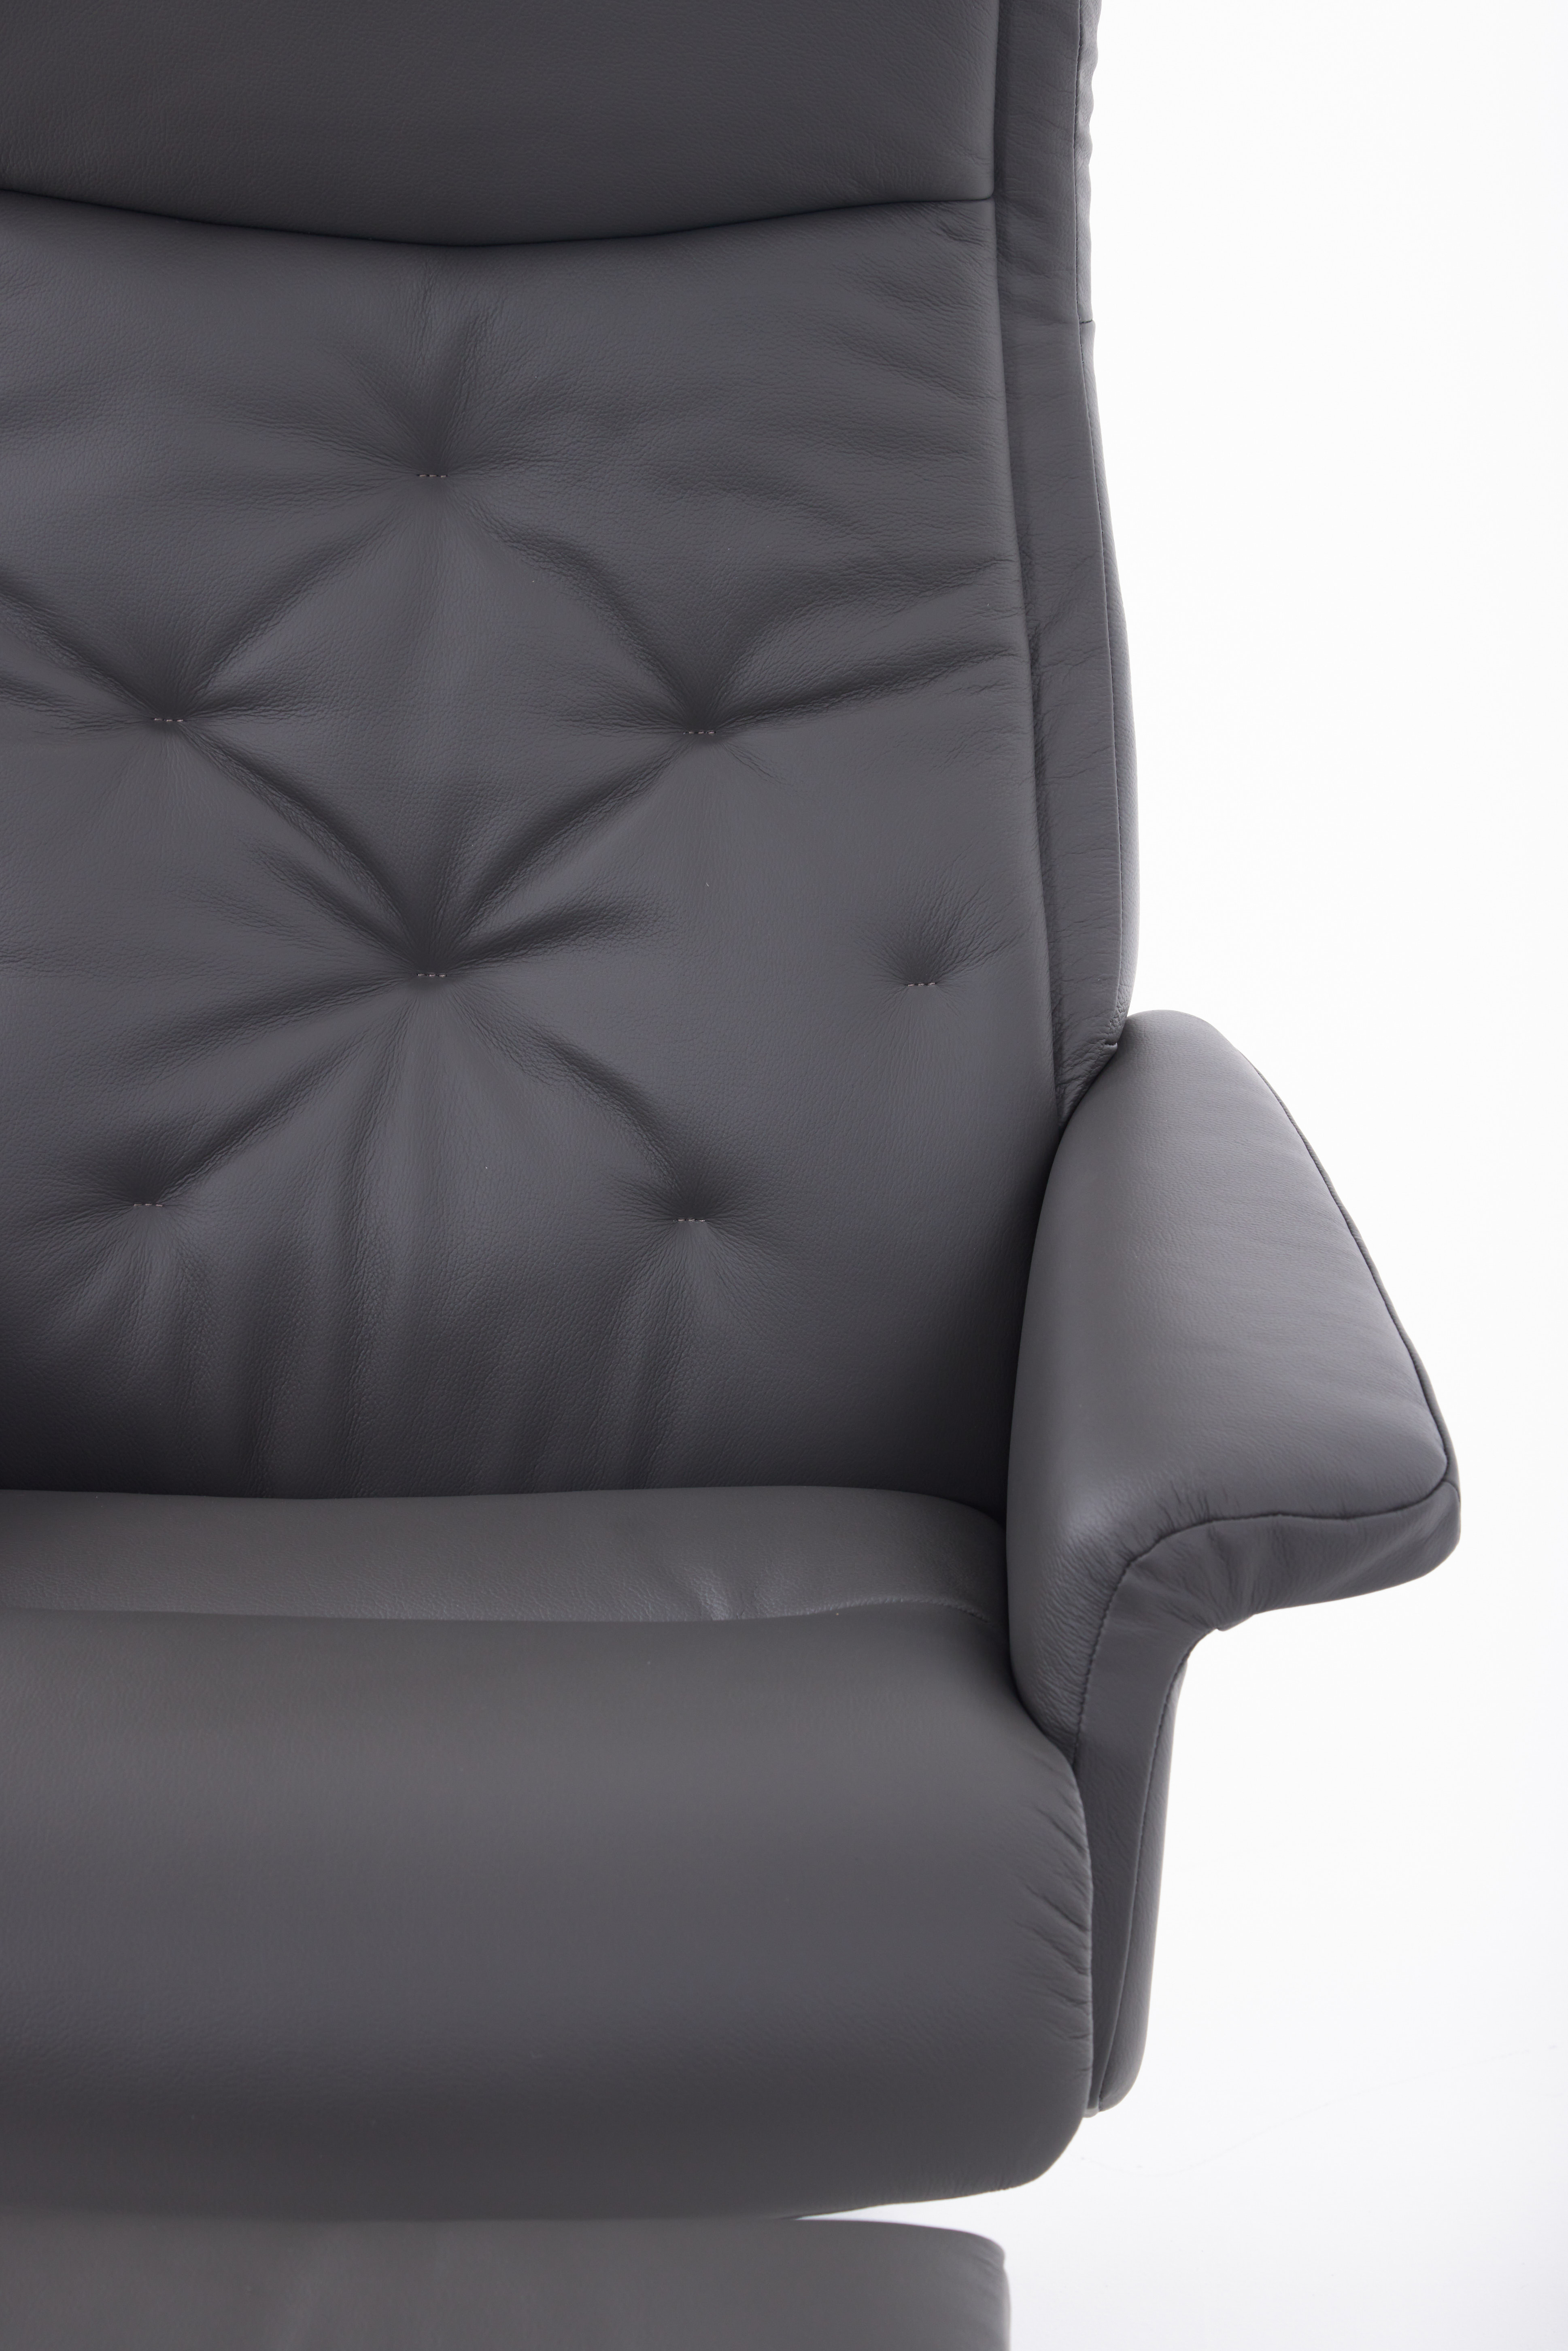 Scandi 1120 Chair Prime Grey